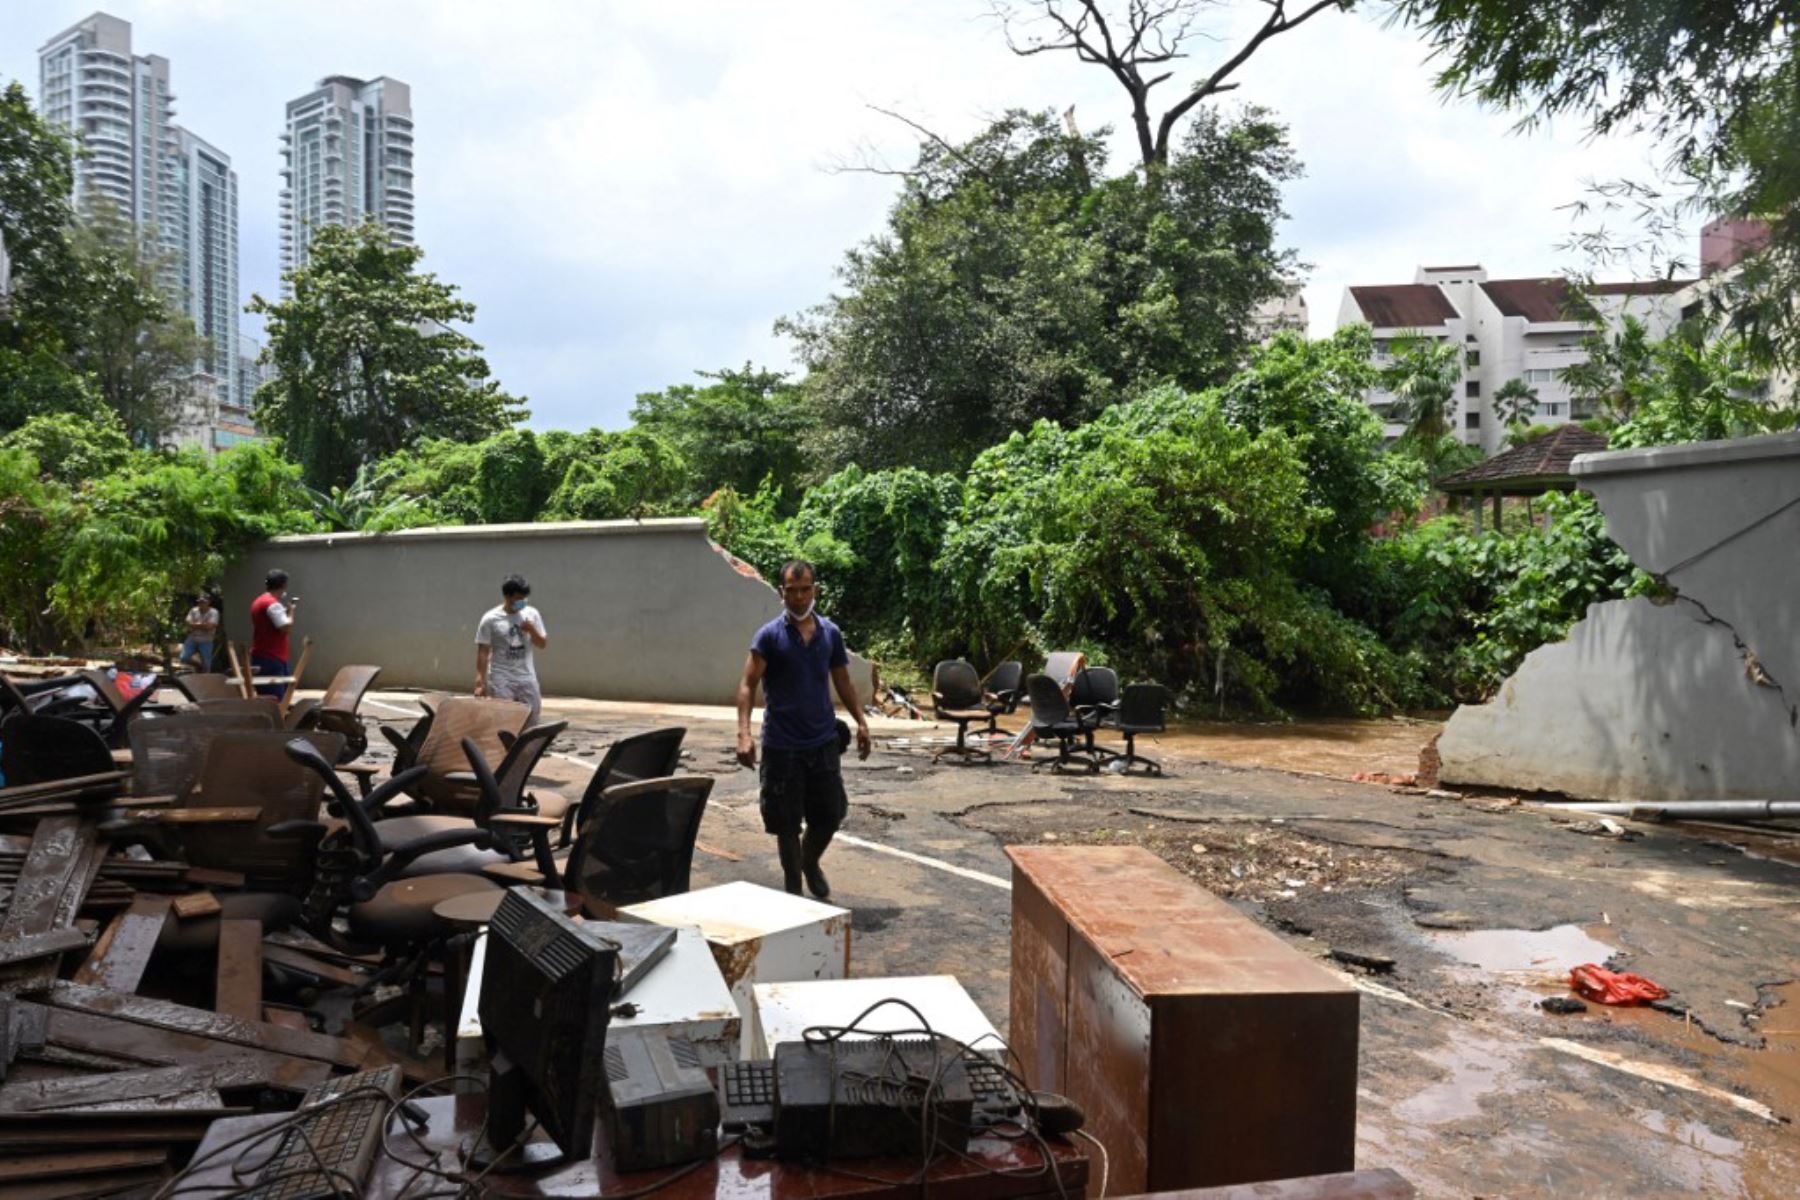 Damnificados pusieron sus muebles a secar al sol junto a una pared donde el río Krukut atravesó e inundó el área en Kemang en Yakarta después que varias zonas de la capital de Indonesia se inundaron por las fuertes lluvias estacionales.

Foto: AFP